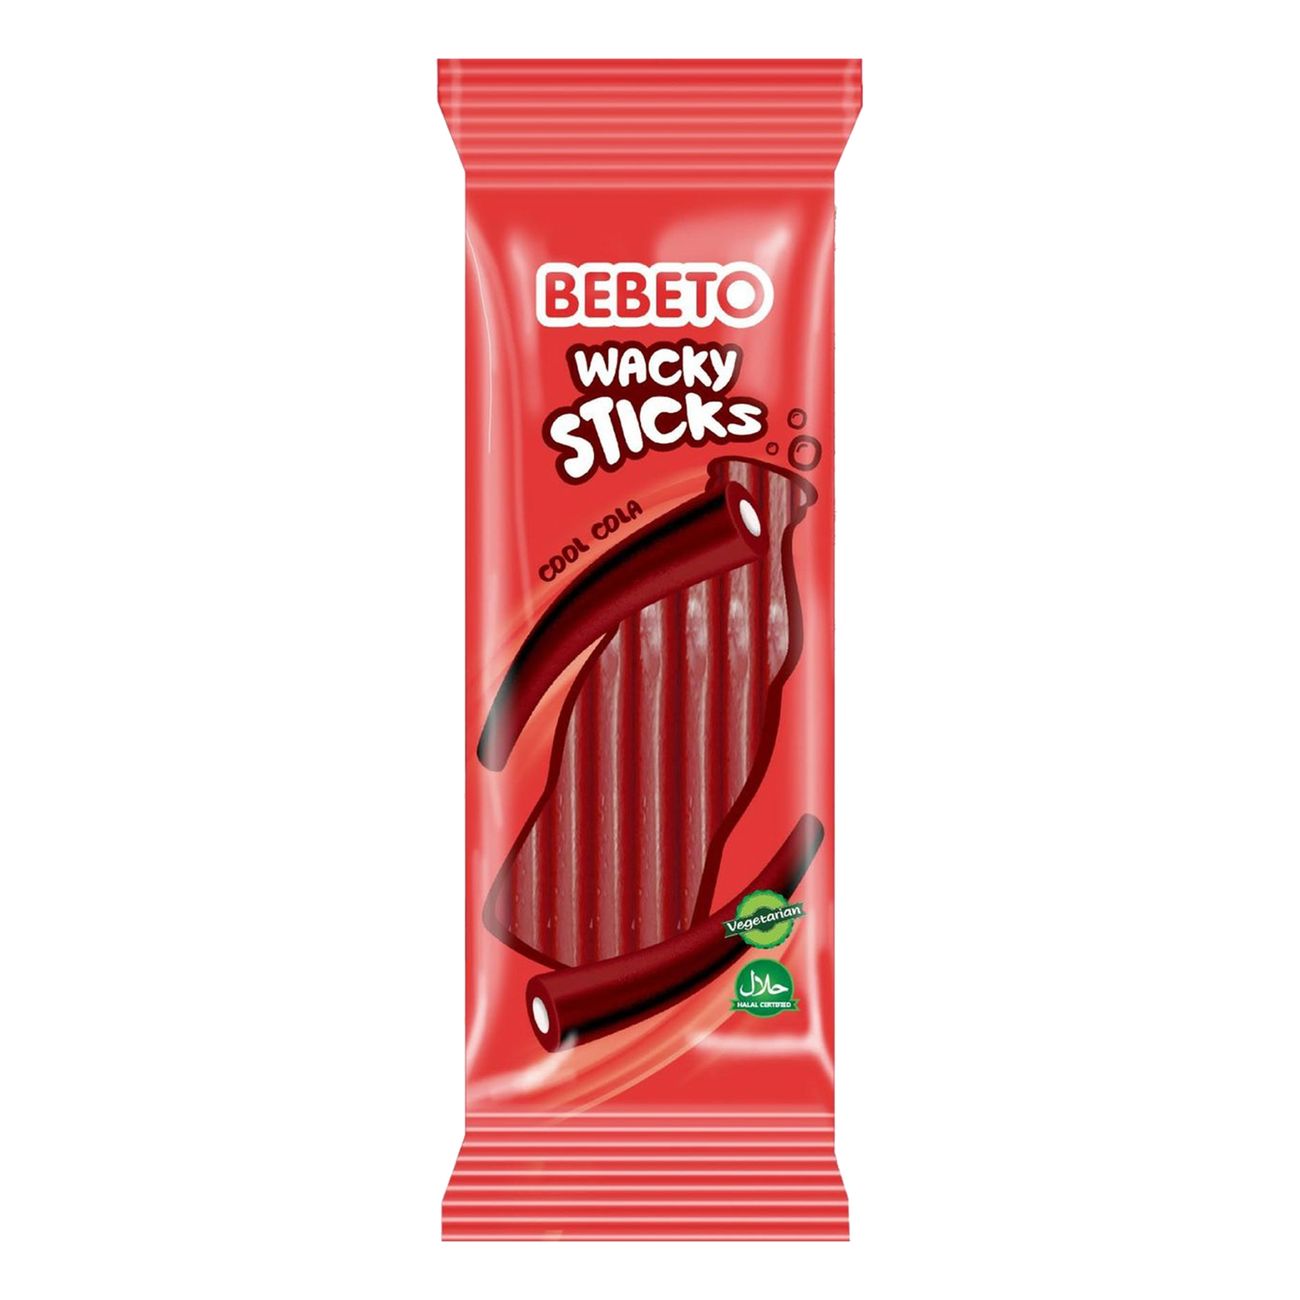 wacky-sticks-cola-90079-2